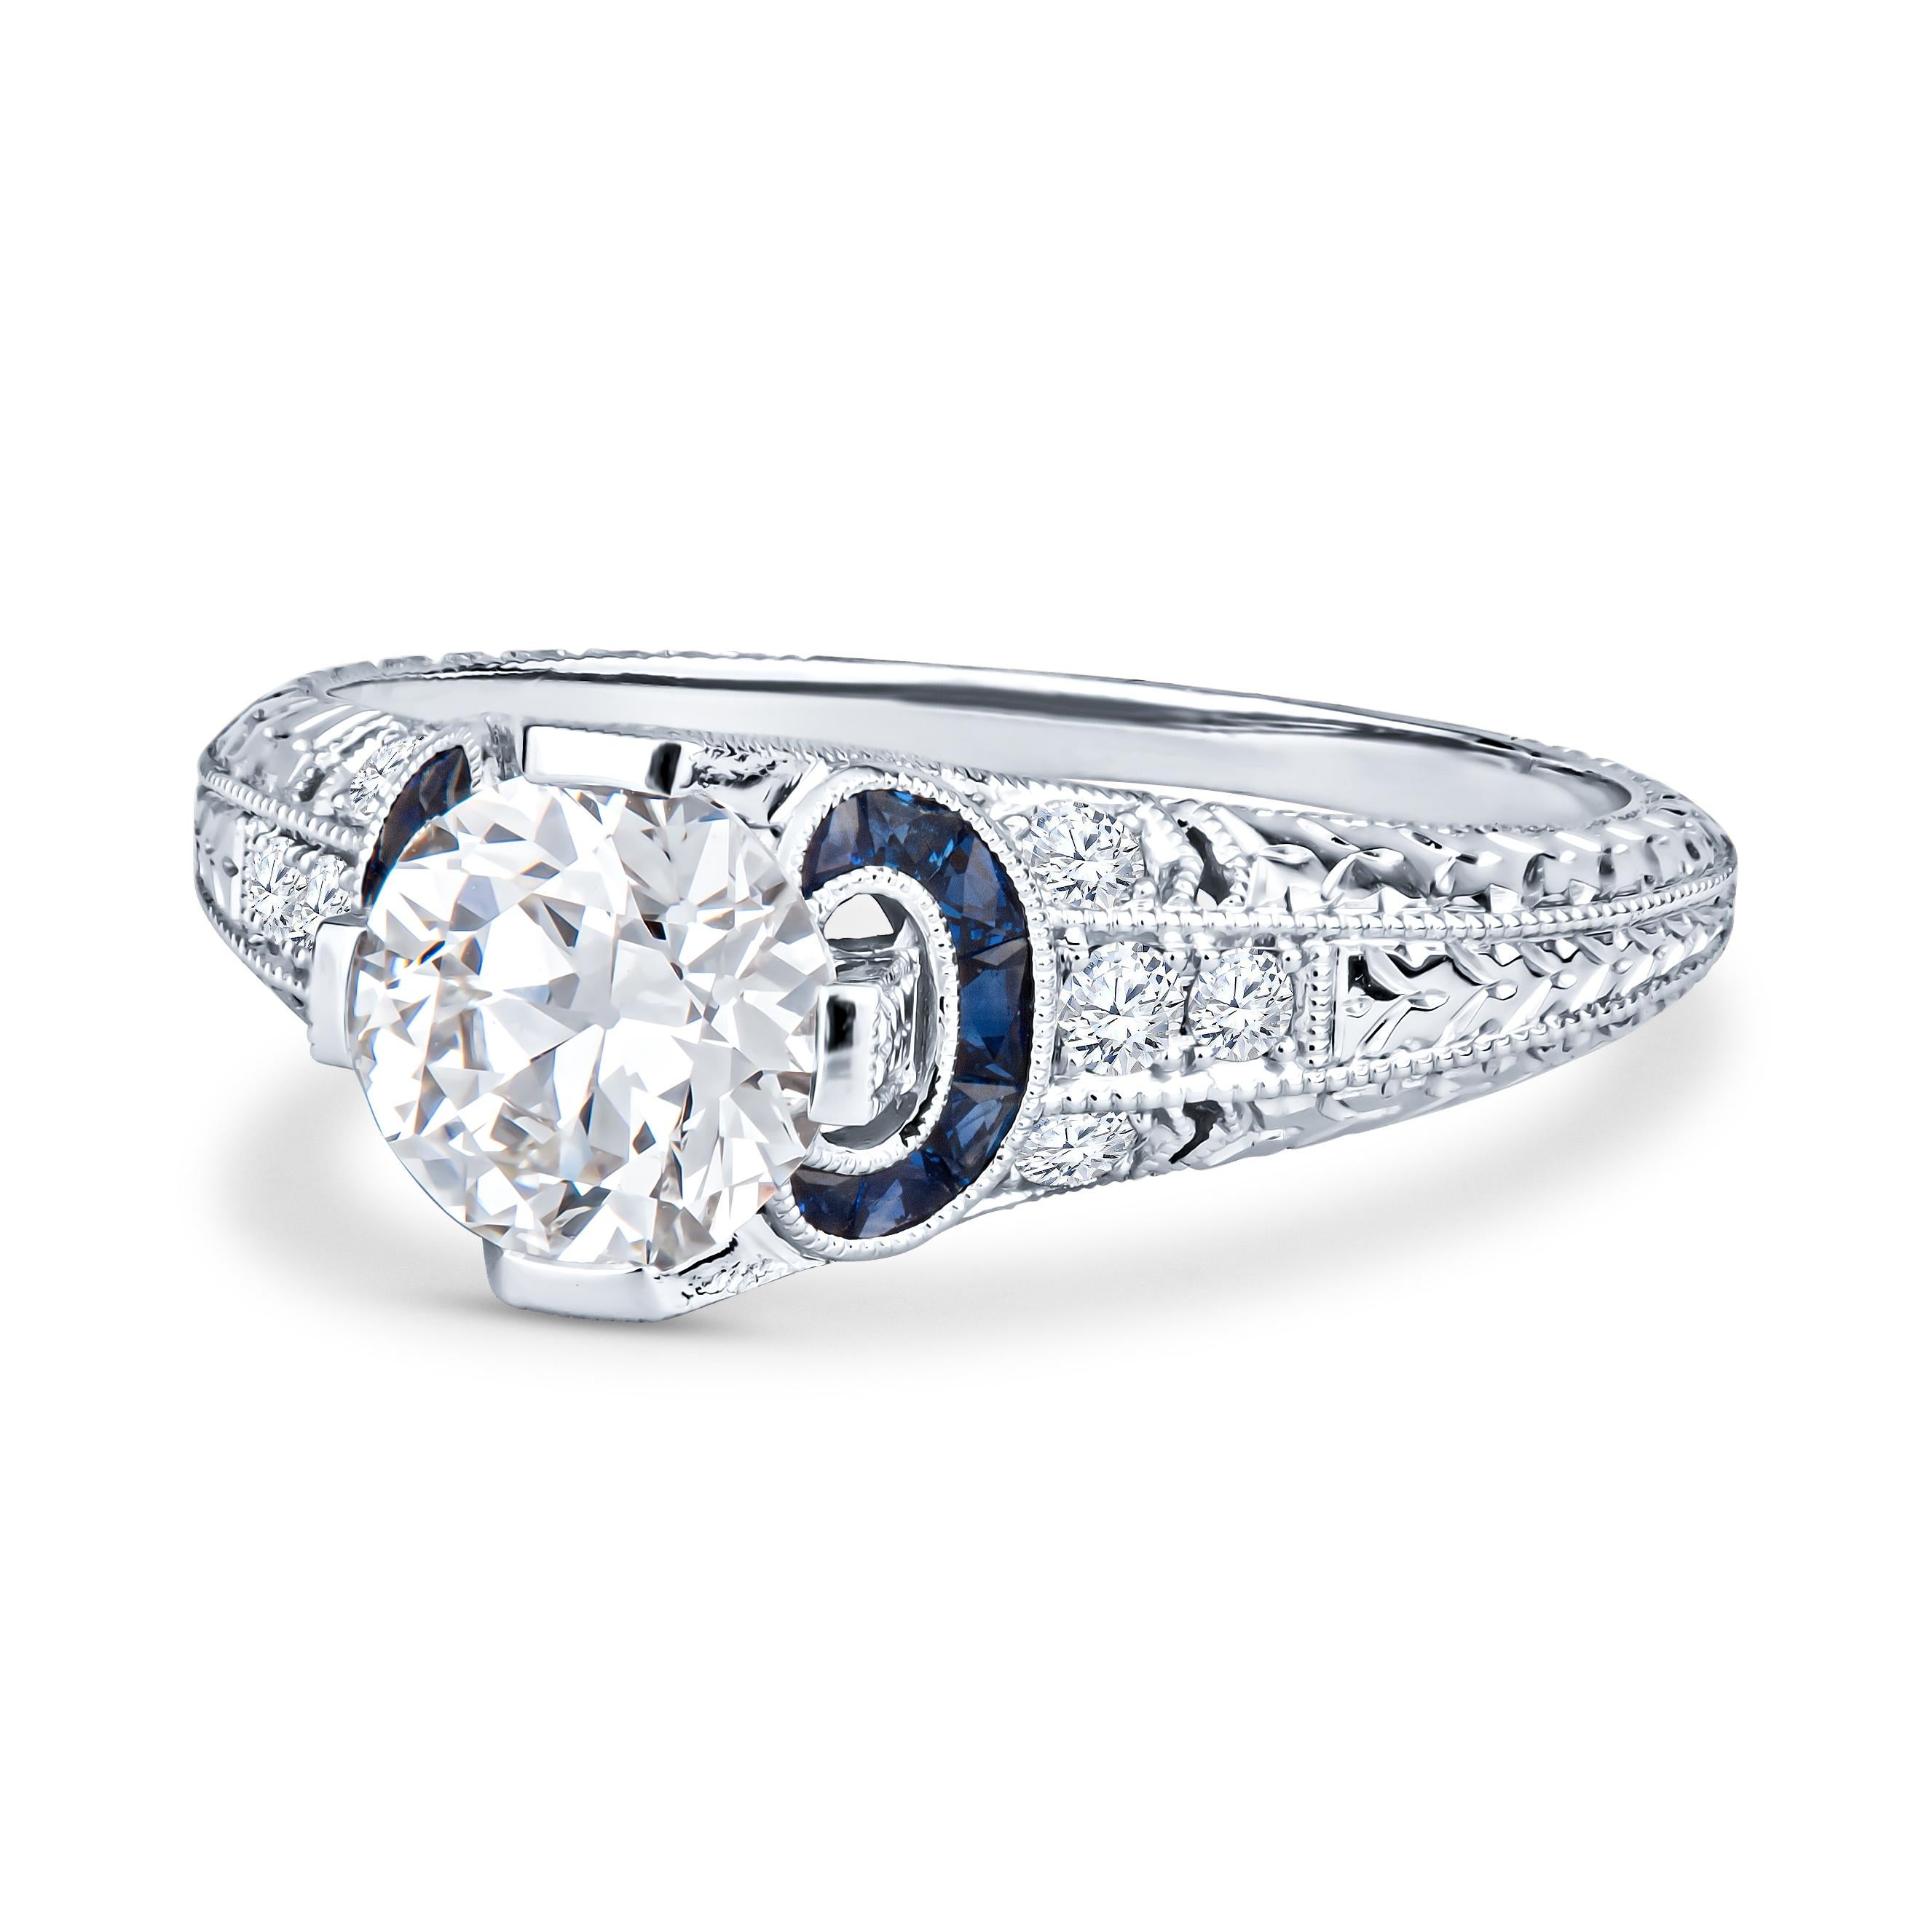 Dieser einzigartige Verlobungsring von Shaftel Diamonds besteht aus einem runden Diamanten von 1,03 Karat mit blauen Saphiren von 0,21 Karat Gesamtgewicht und Diamanten mit Akzenten von 0,14 Karat Gesamtgewicht. Der Ring ist ein antik anmutender